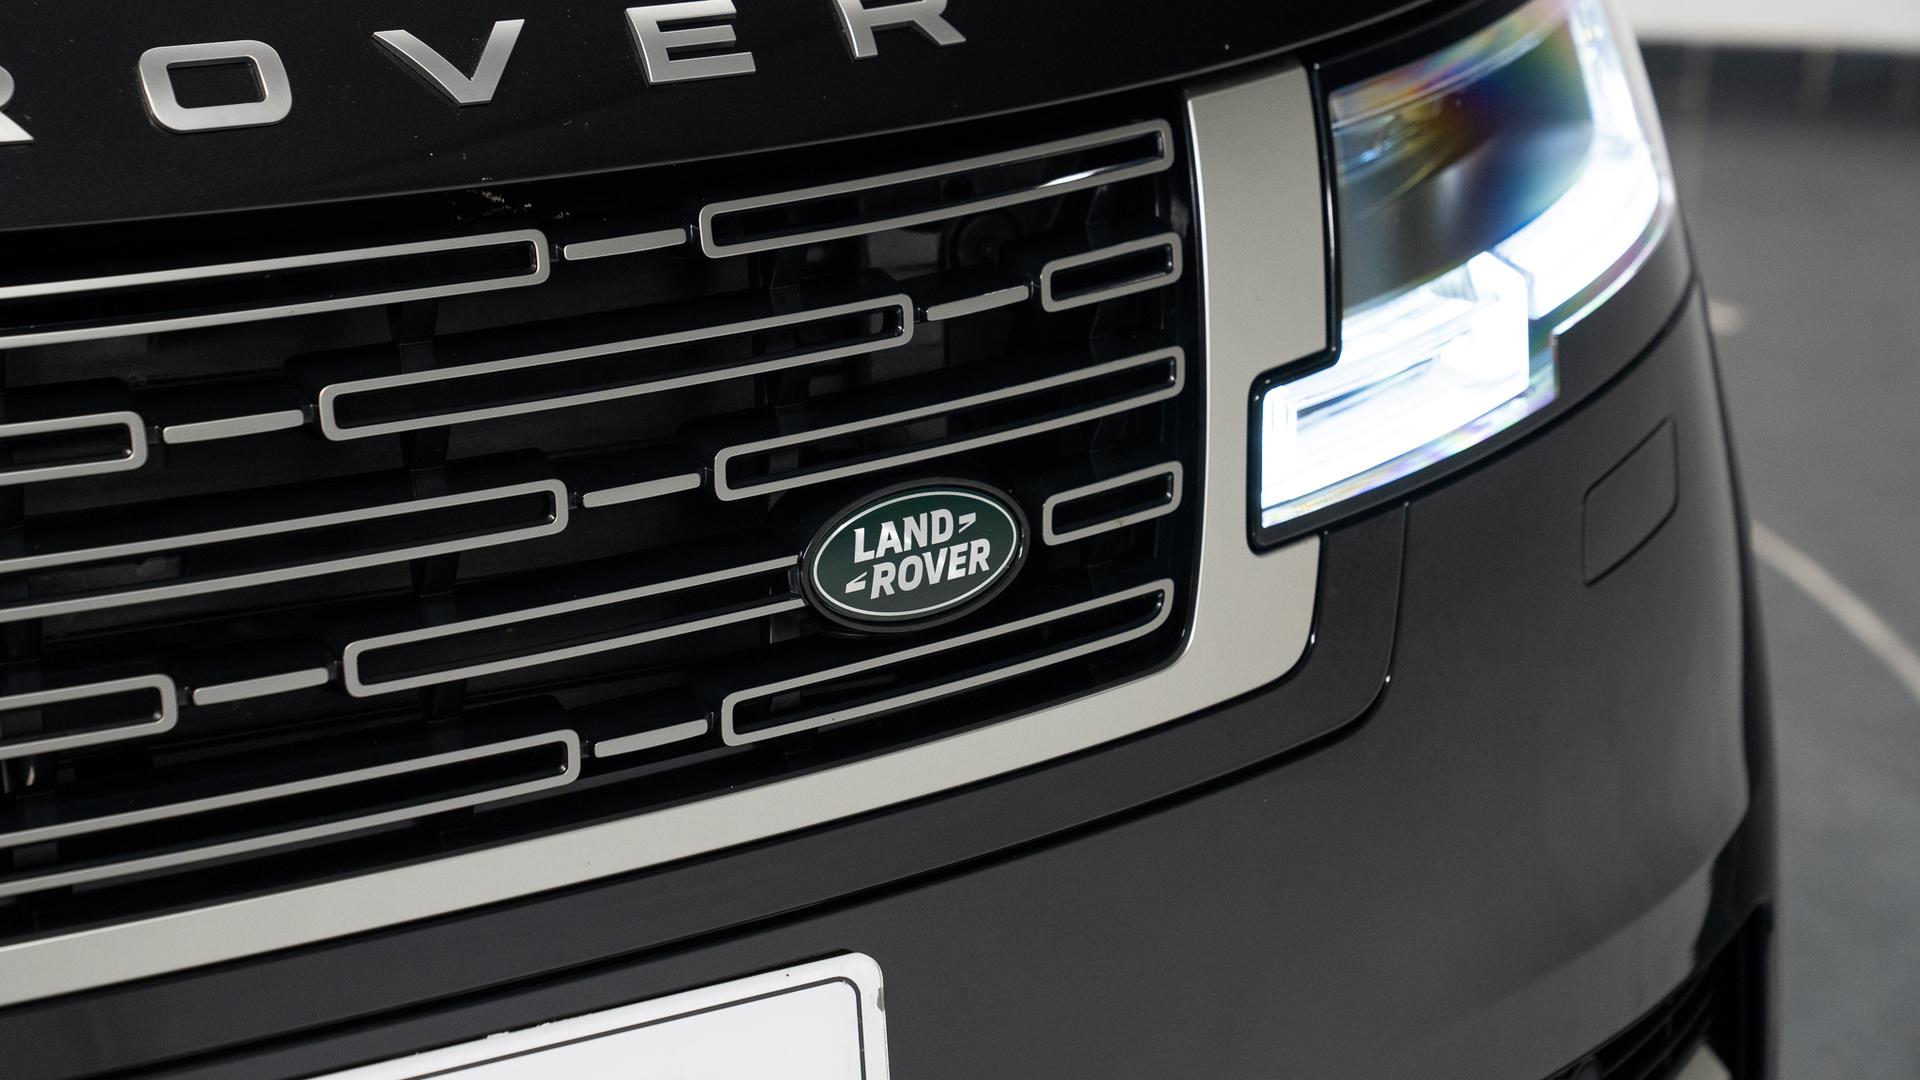 Land Rover RANGE ROVER Photo b8b748f9-fb81-4d99-bc01-bdfc06f0909f.jpg